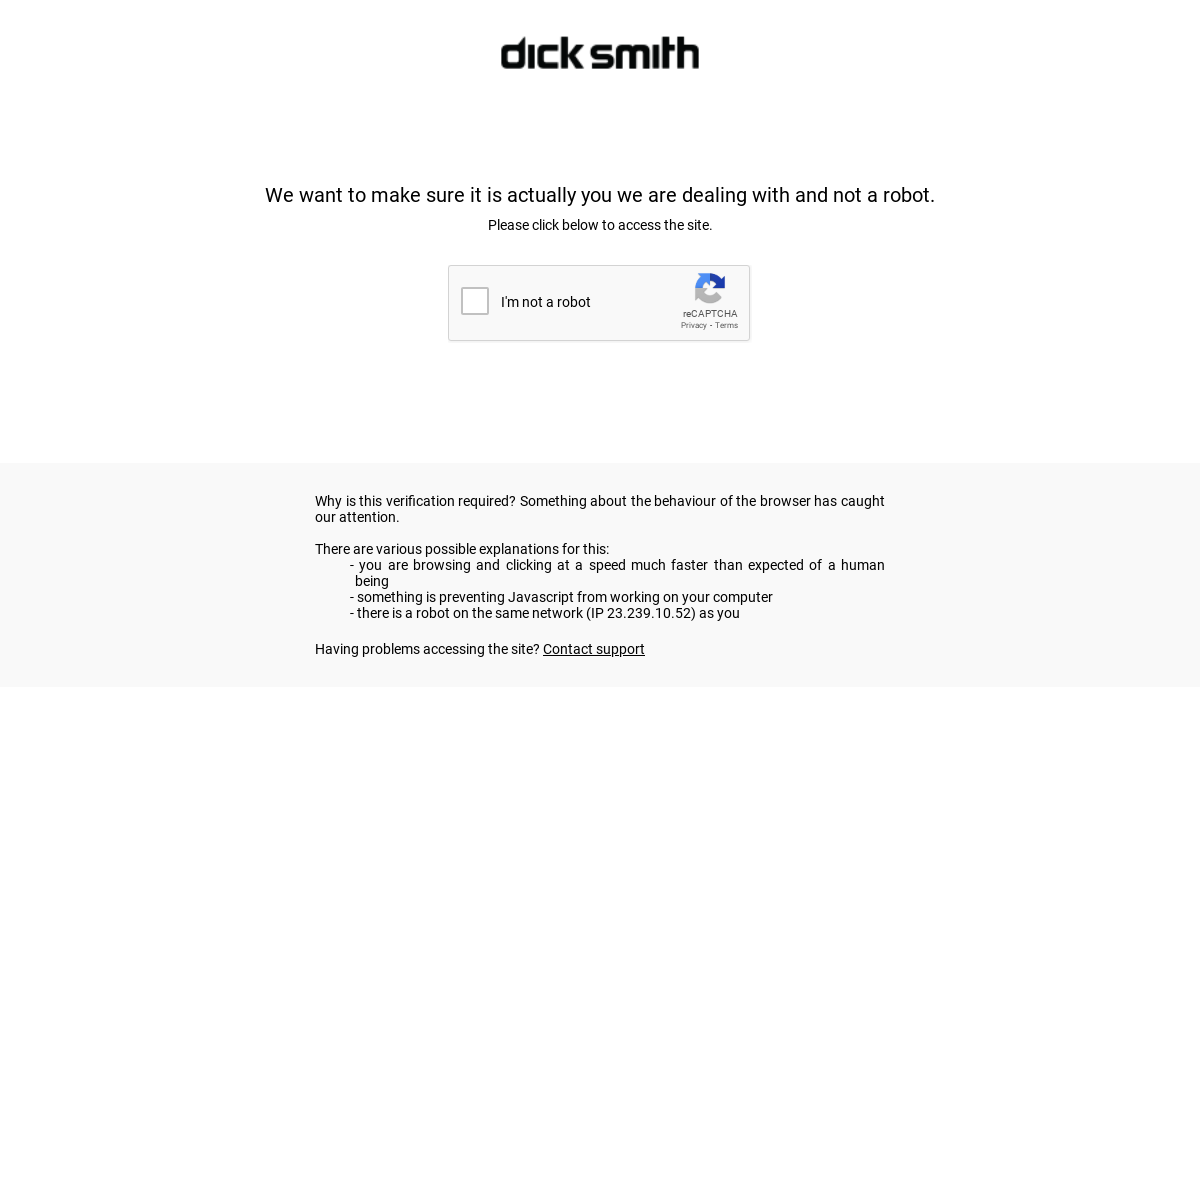 A complete backup of dicksmith.com.au